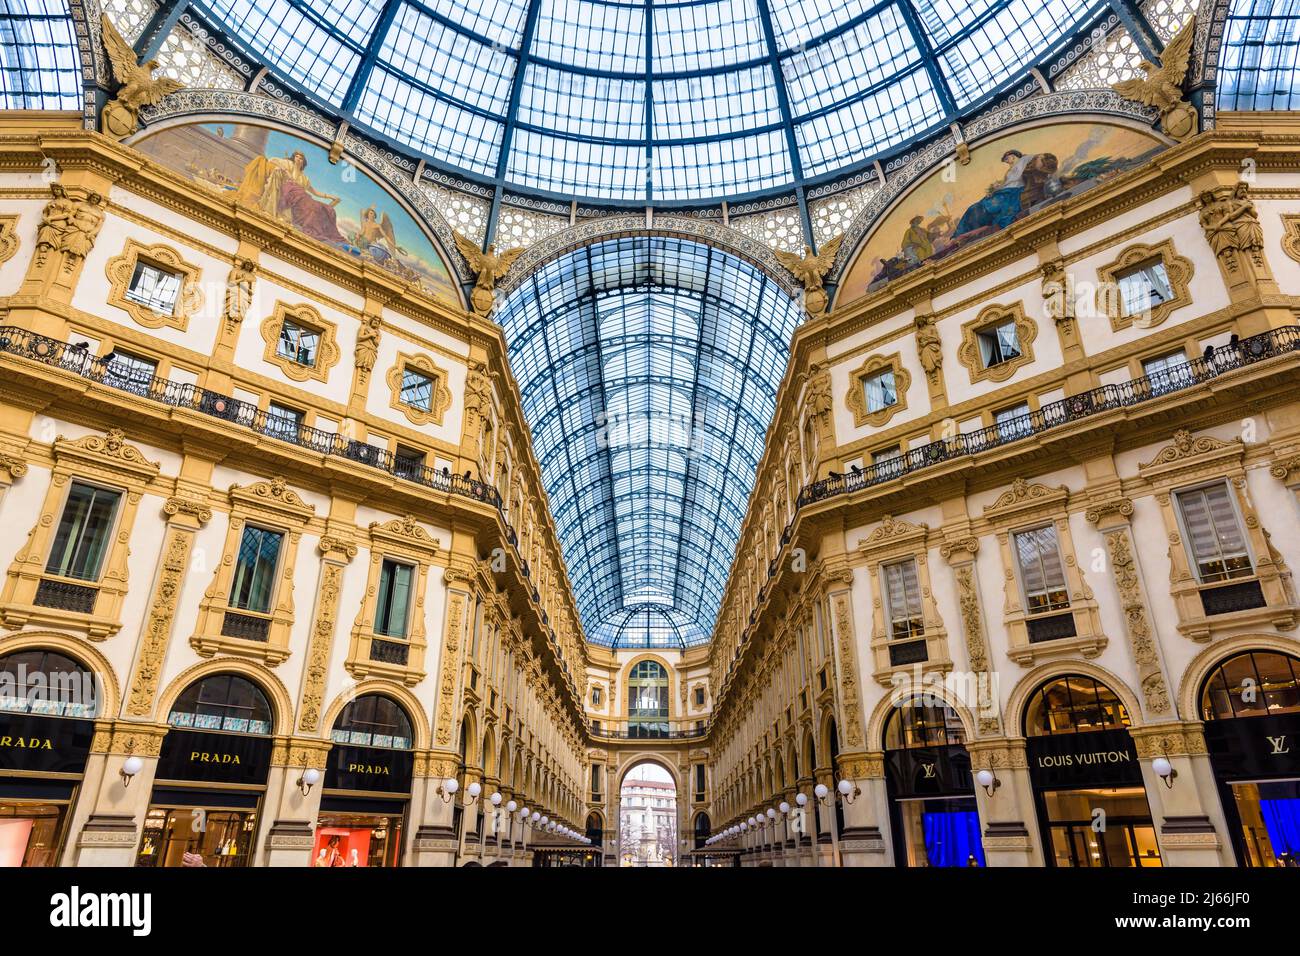 El centro comercial acristalado Galleria Vittorio Emanuele II en Milán, Italia. Foto de stock